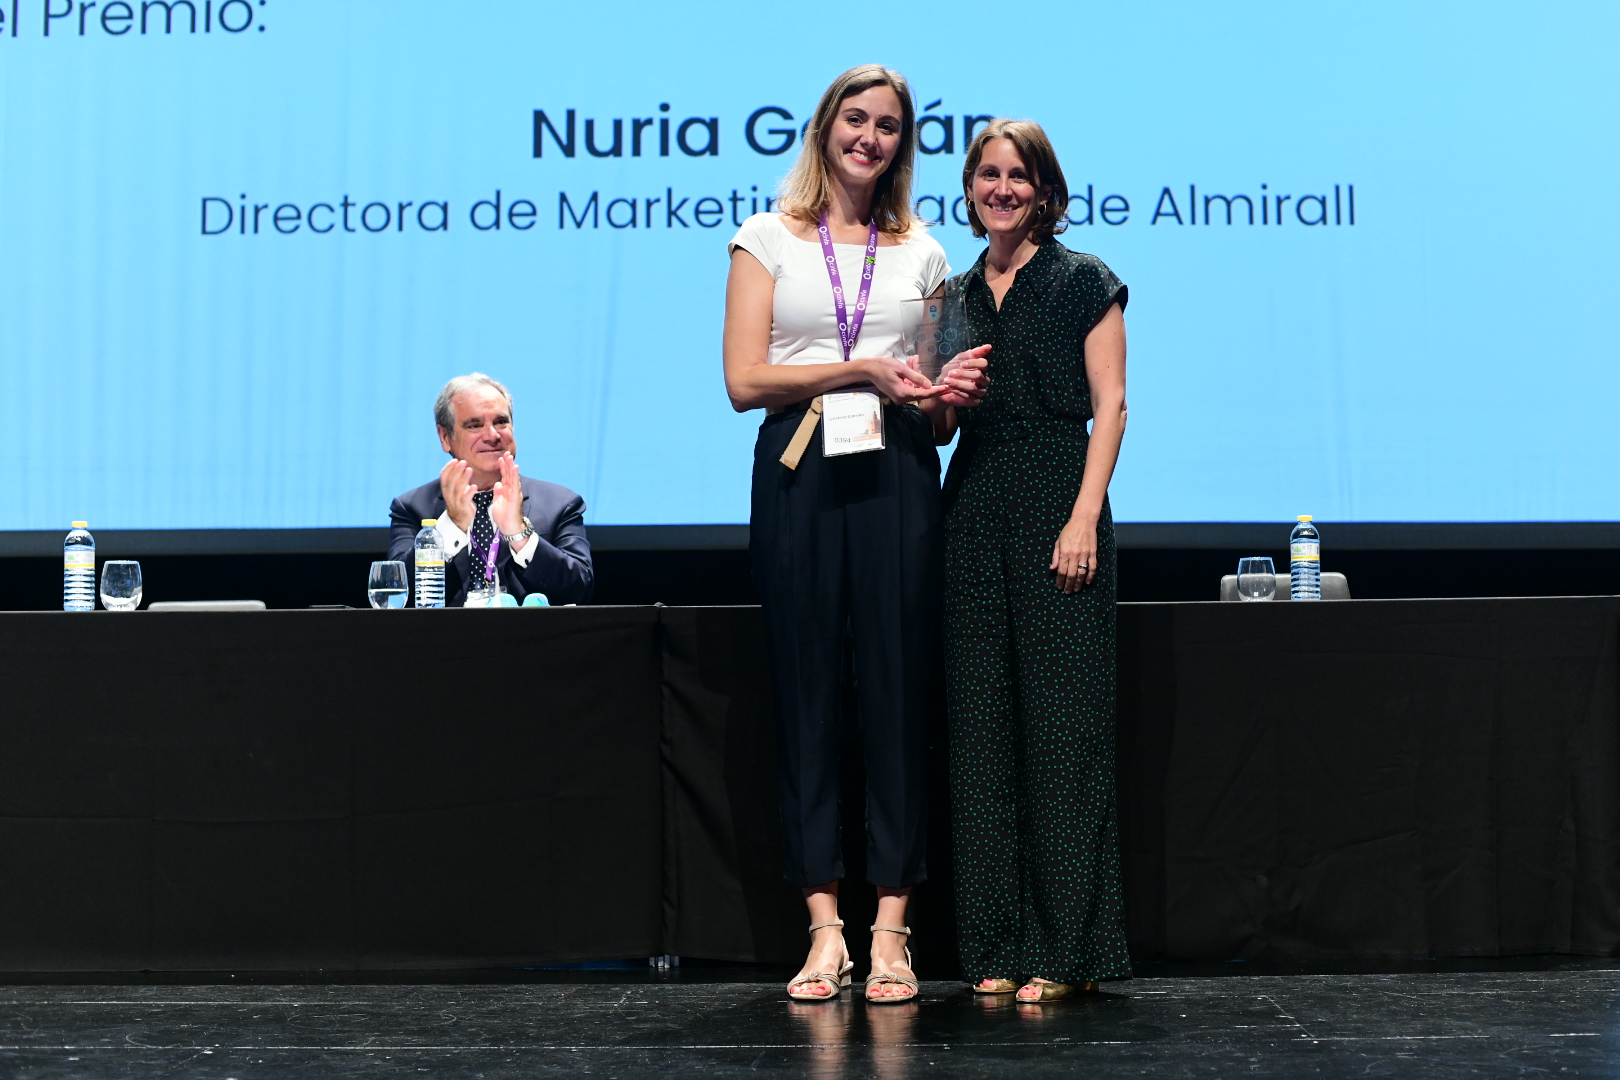 Los farmacéuticos gaditanos Cristina Carrillo y Felipe Mozo, premiados en el congreso nacional de farmacia por su labor de divulgación en redes sociales e investigación